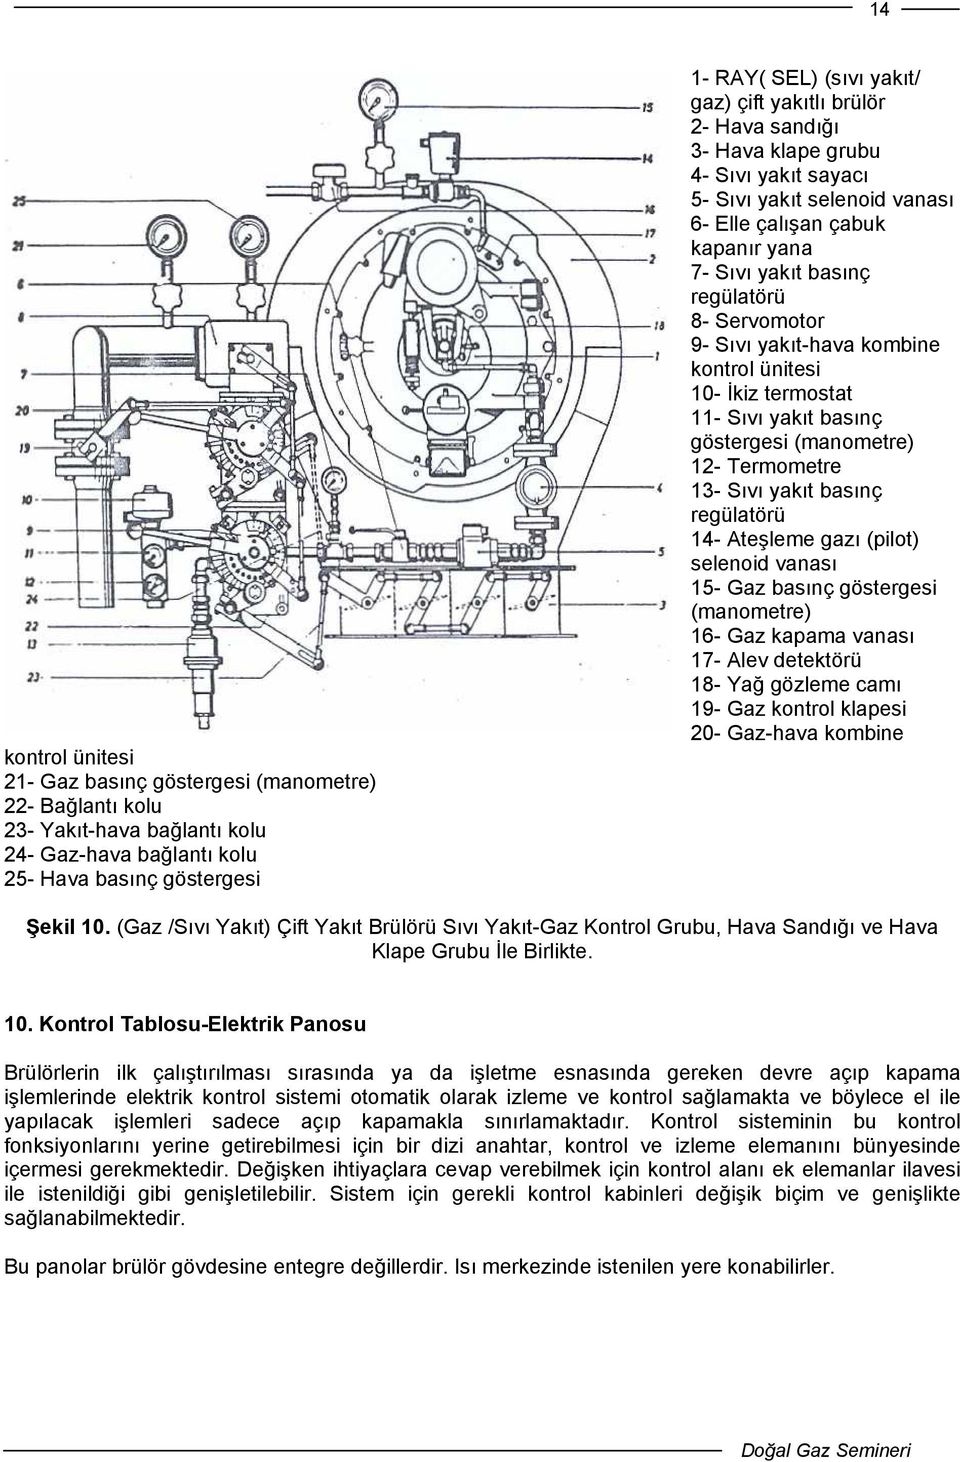 yakıt-hava kombine kontrol ünitesi 10- İkiz termostat 11- Sıvı yakıt basınç göstergesi (manometre) 12- Termometre 13- Sıvı yakıt basınç regülatörü 14- Ateşleme gazı (pilot) selenoid vanası 15- Gaz